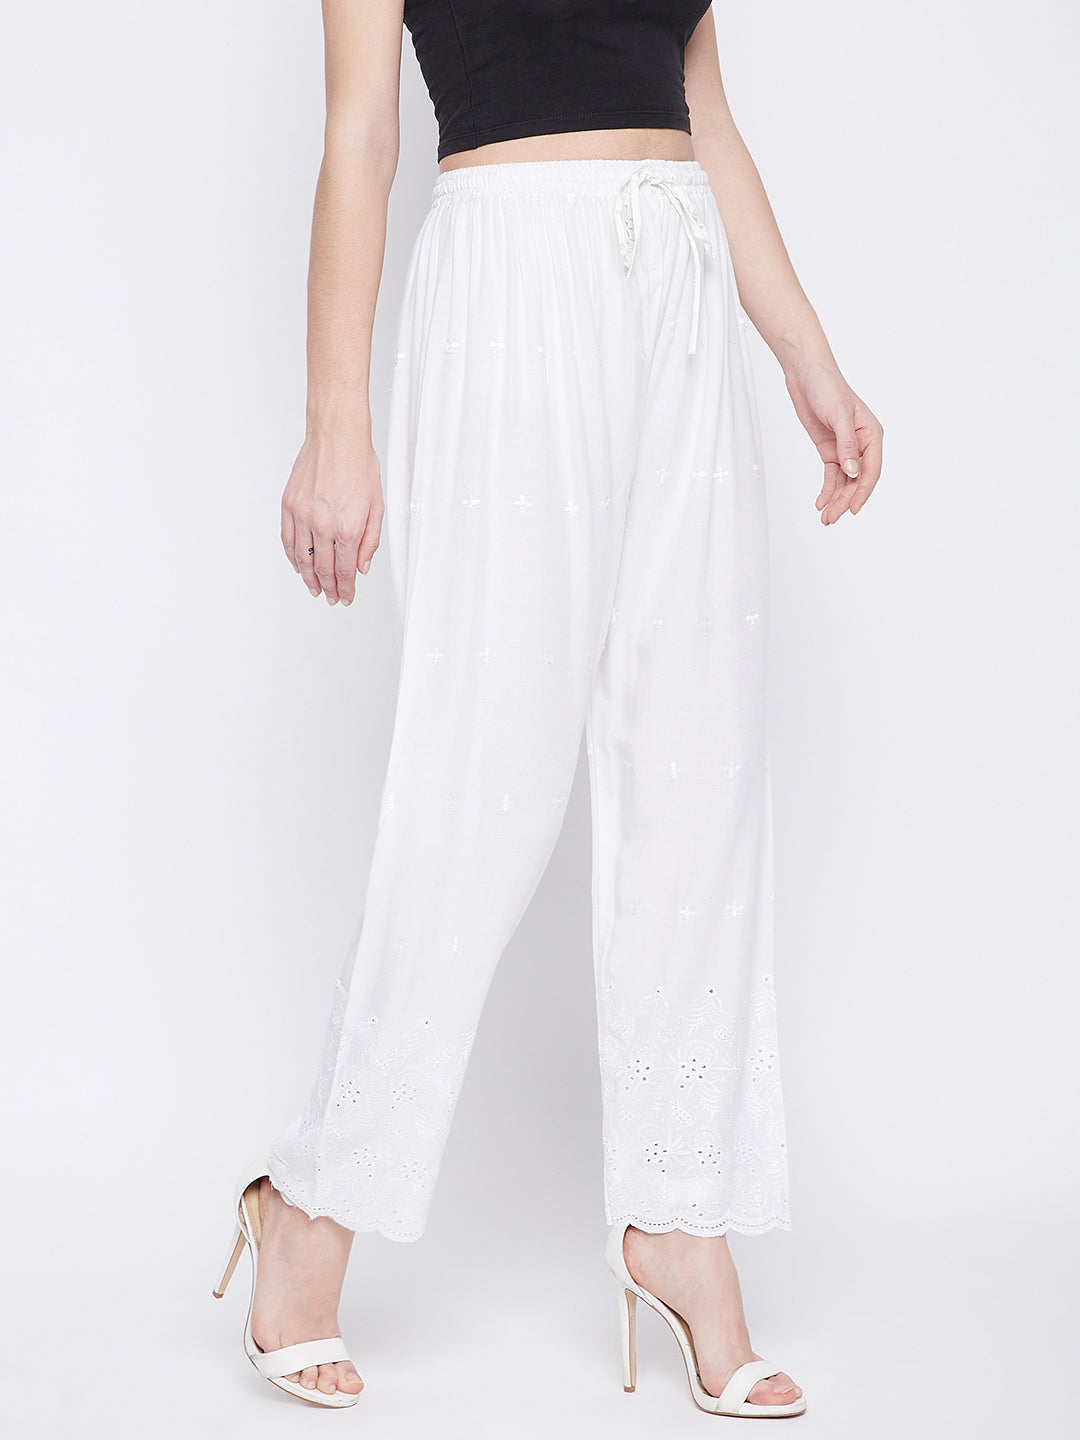 Azúcar Ladies Long Pants Elastic Waist Band With Belt. 100% Linen. White  Color.